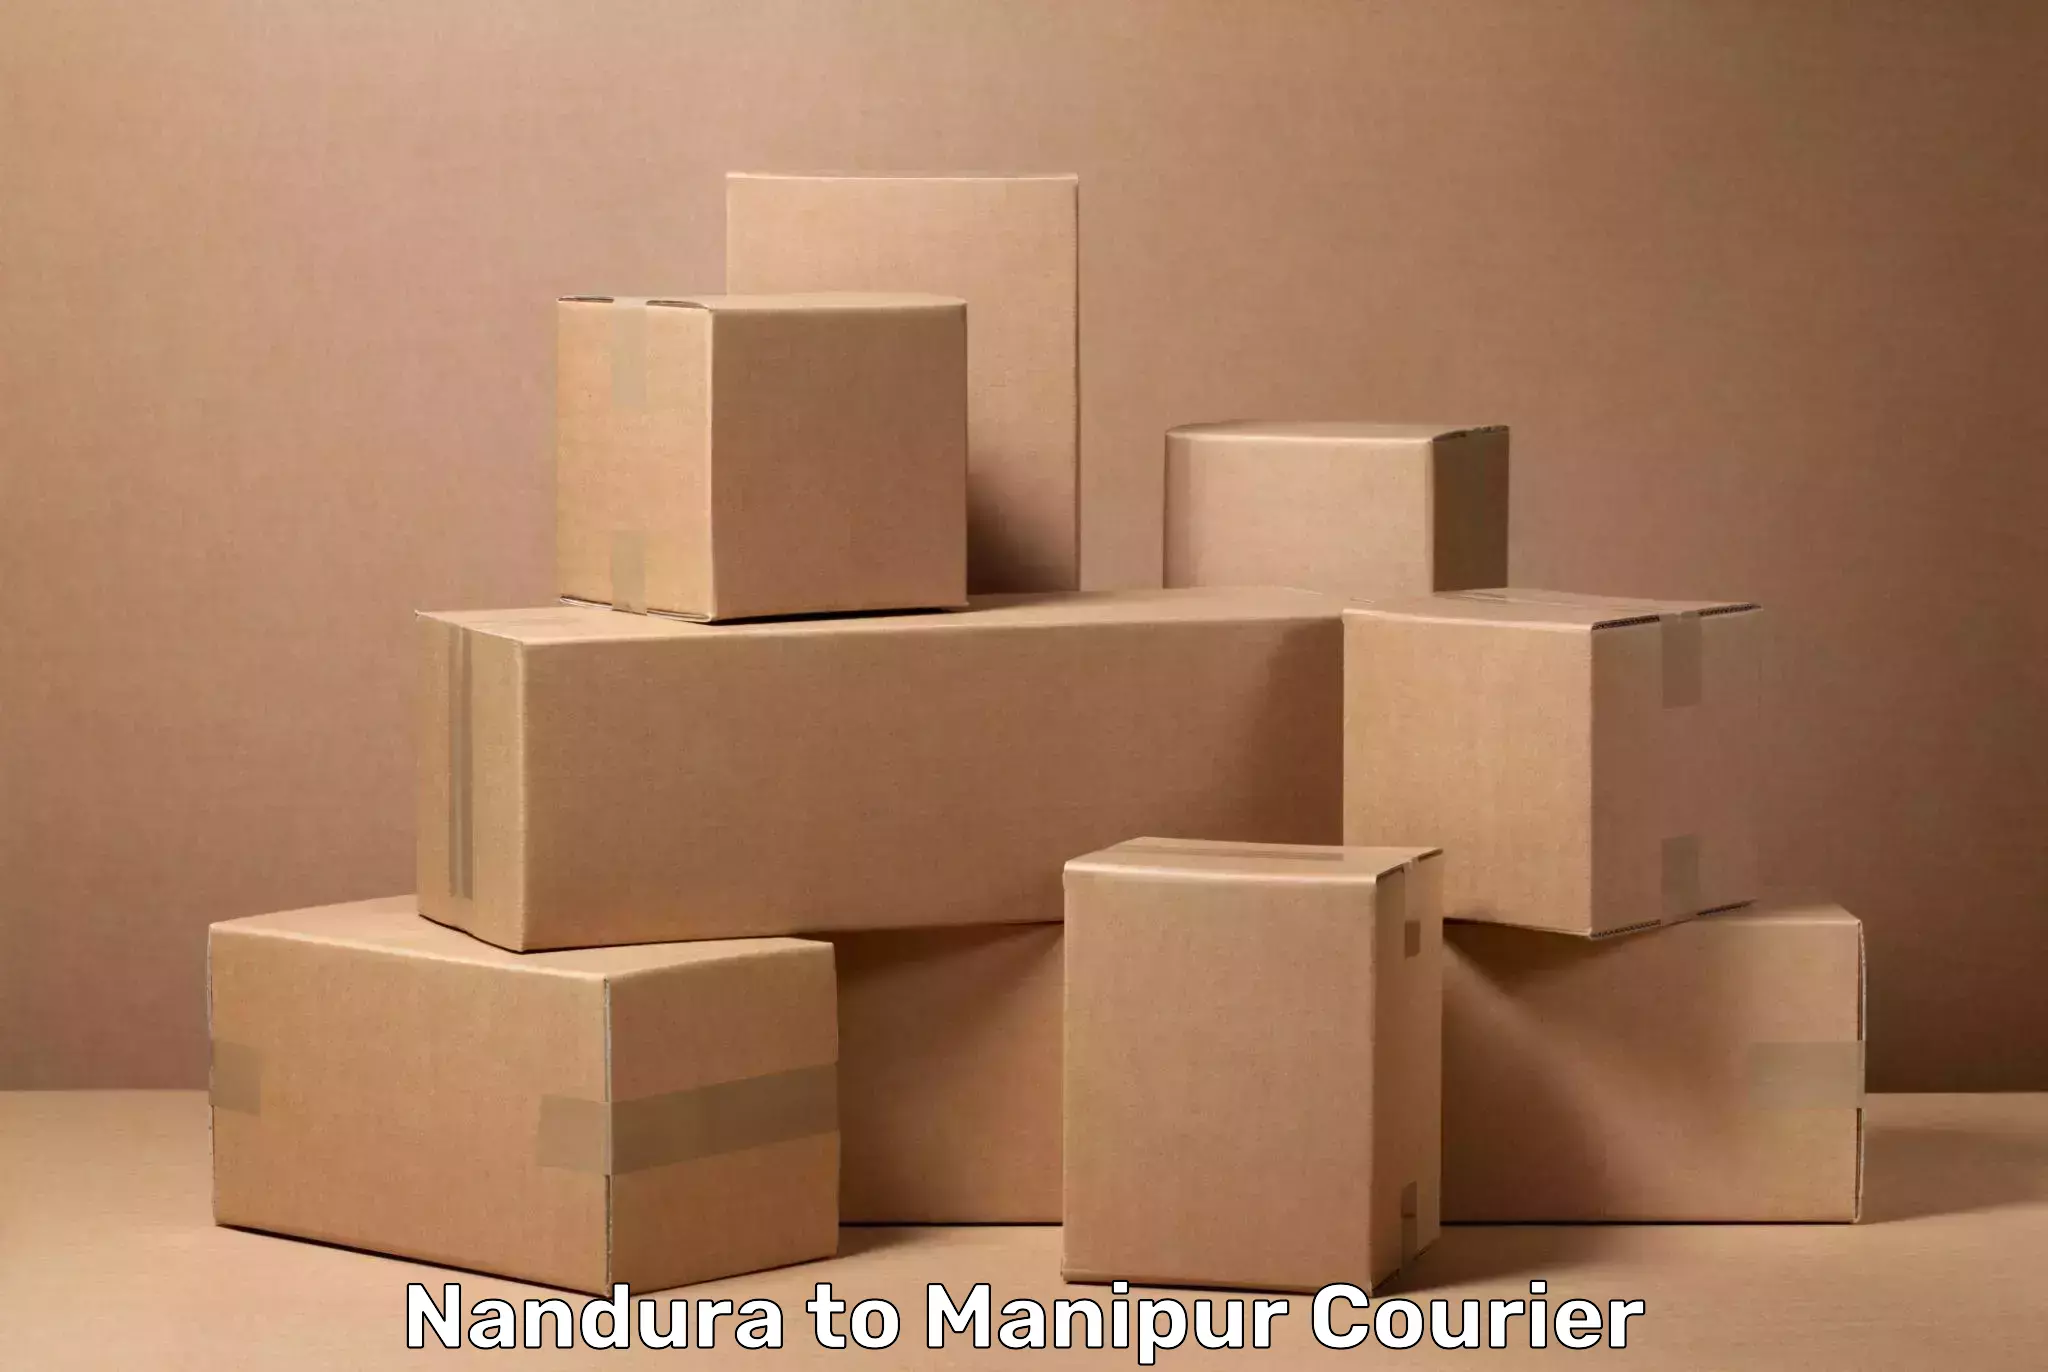 Luggage transport schedule Nandura to Chandel